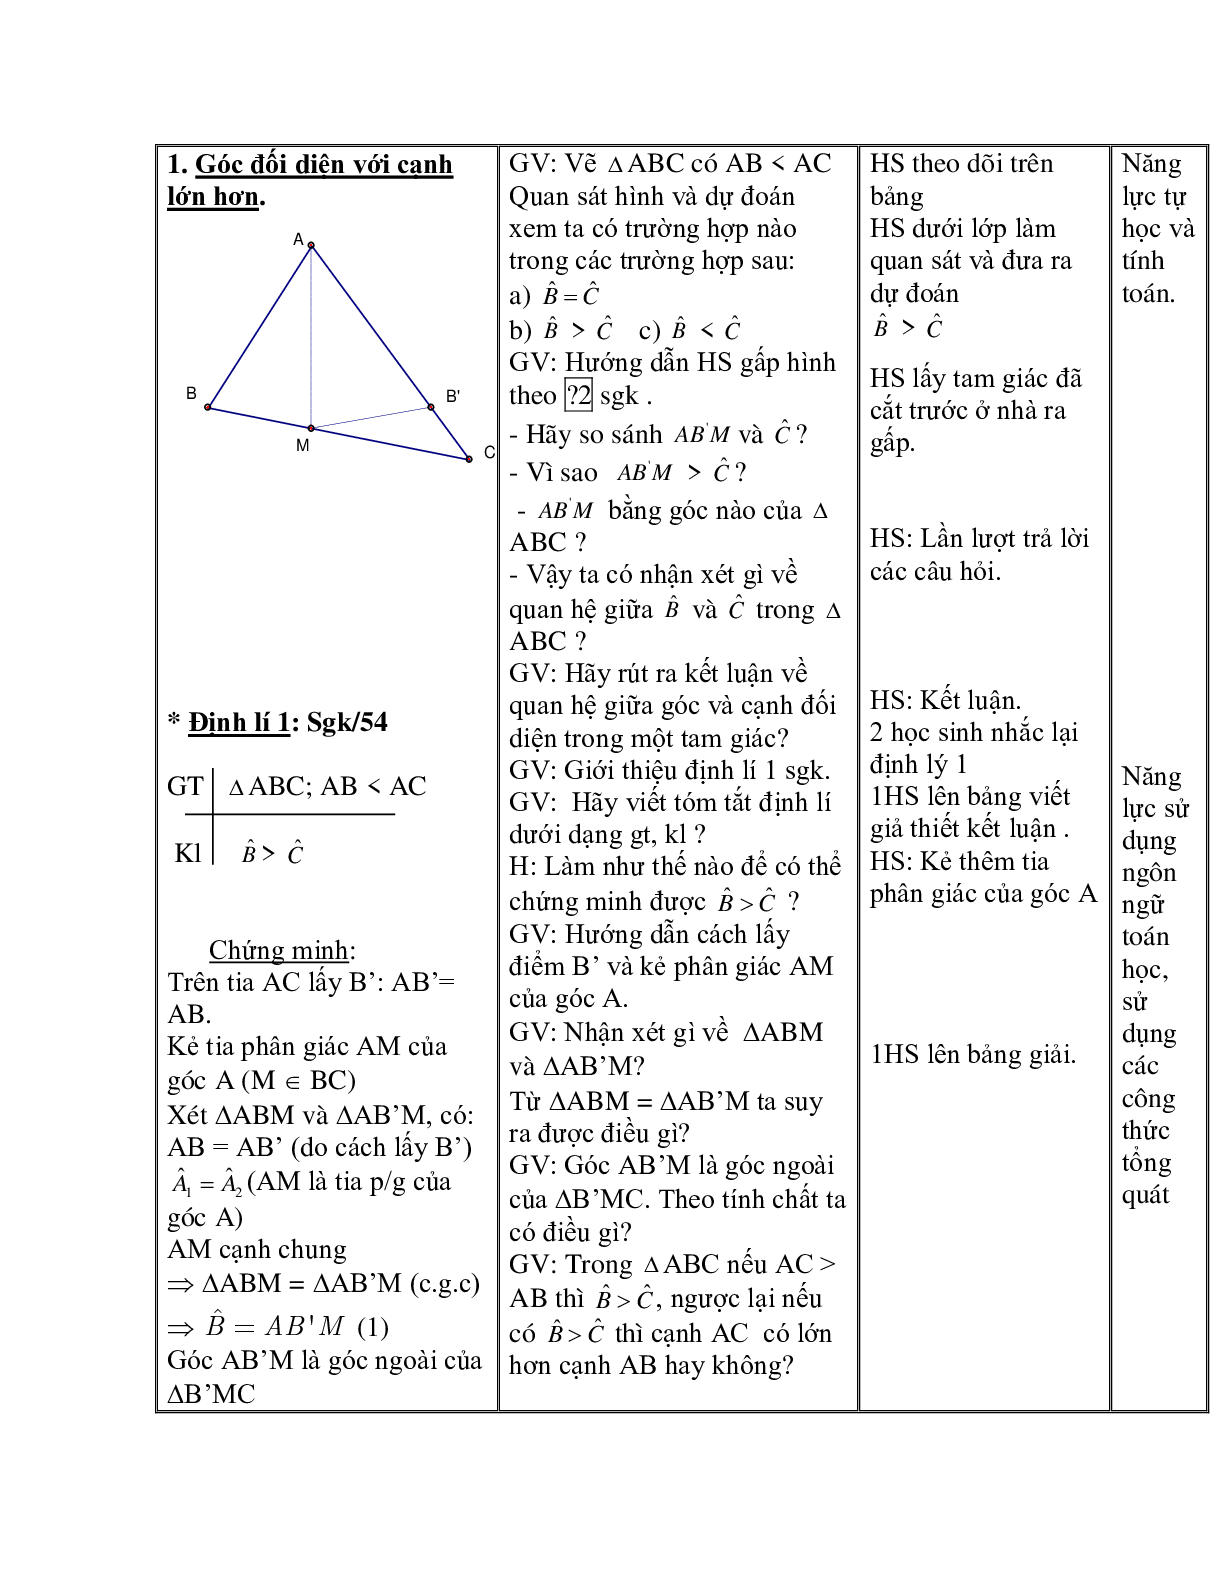 Giáo án Toán học 7 bài 1: Quan hệ giữa góc và cạnh đối diện trong một tam giác hay nhất (trang 3)